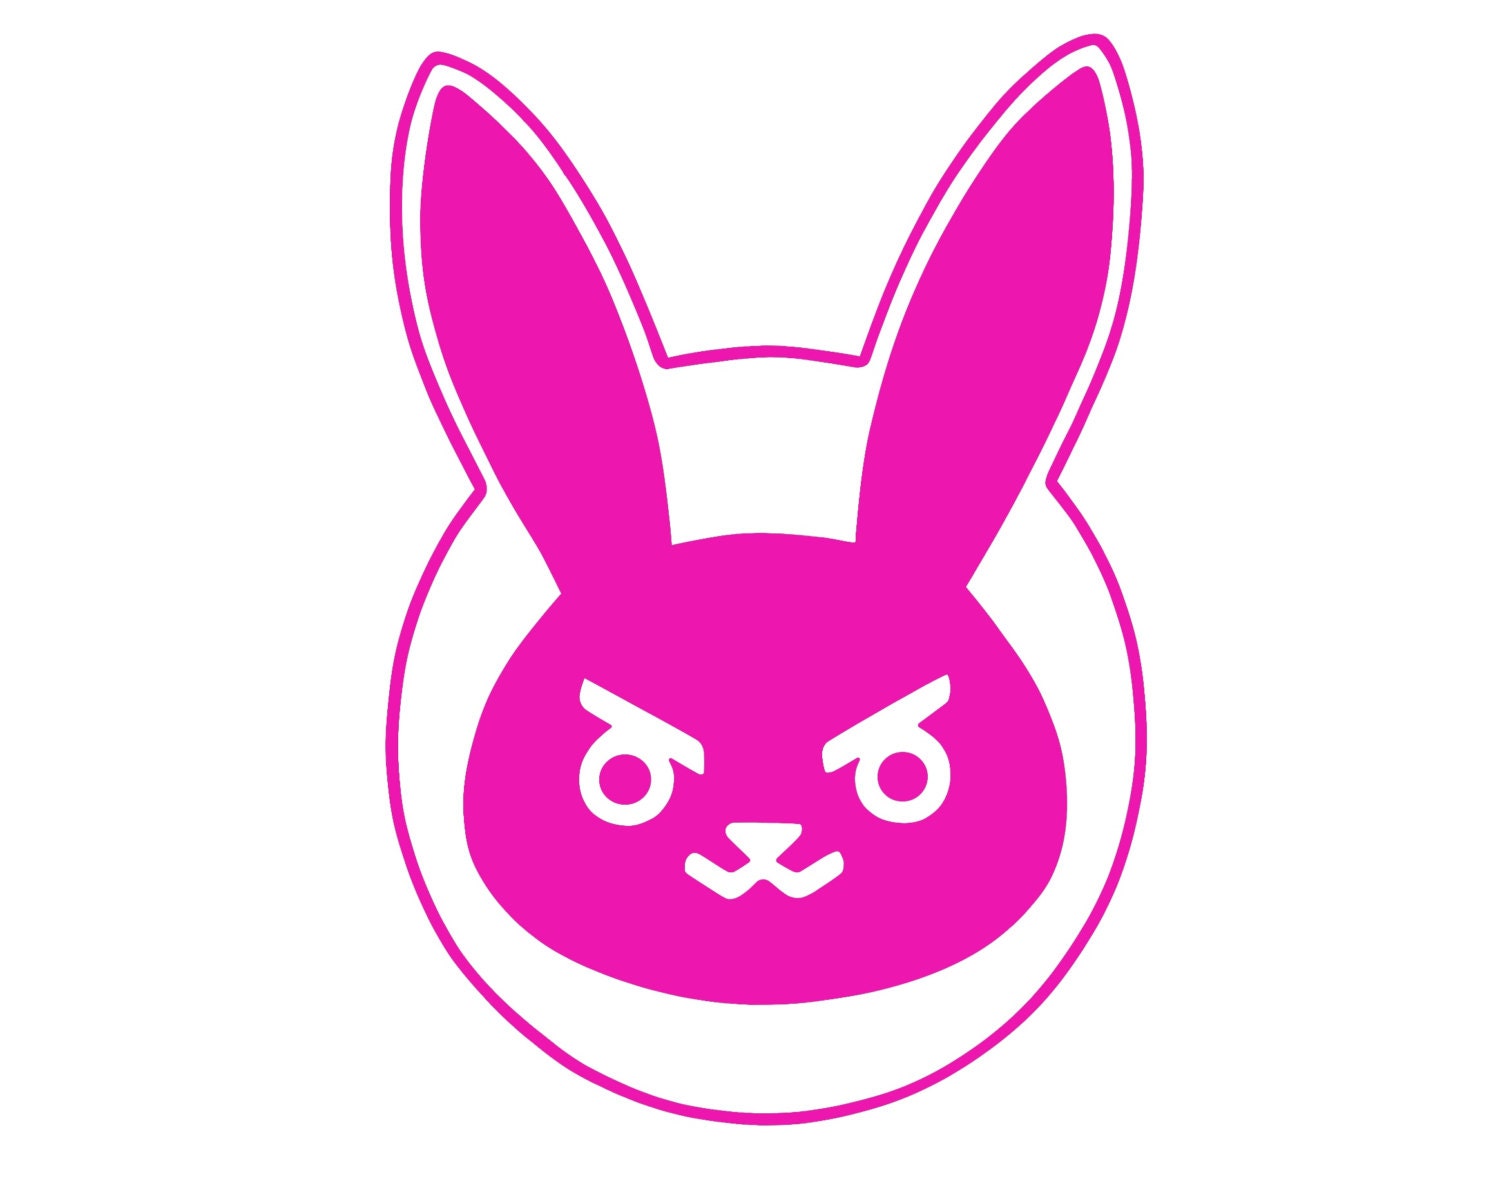 Overwatch D.Va Cute Bunny Spray Decal for Car/Laptop